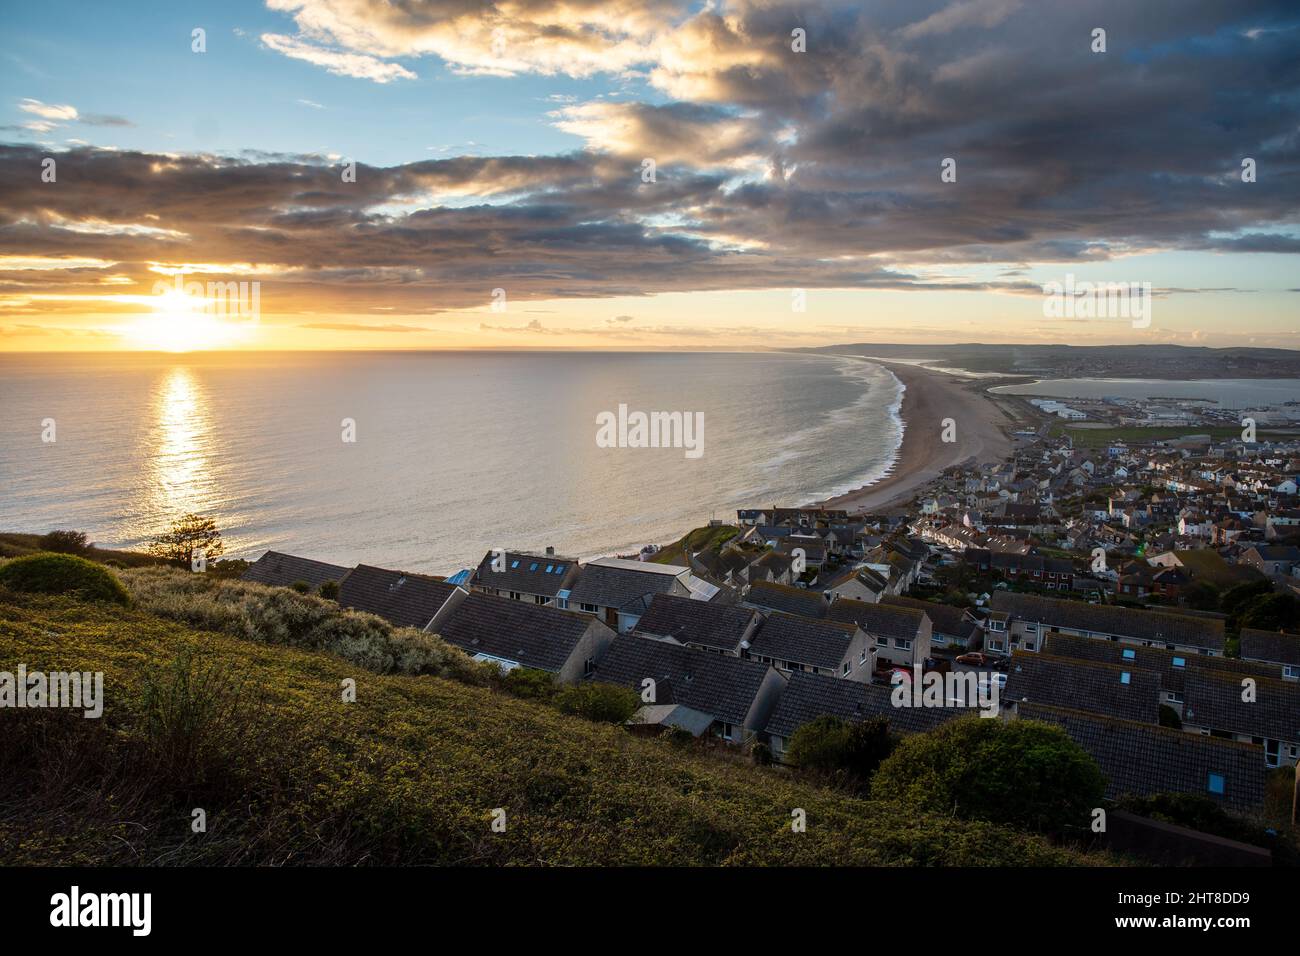 Le soleil se couche sur la baie de Lyme et la plage de Chesil sur la côte jurassique de Dorset. Banque D'Images